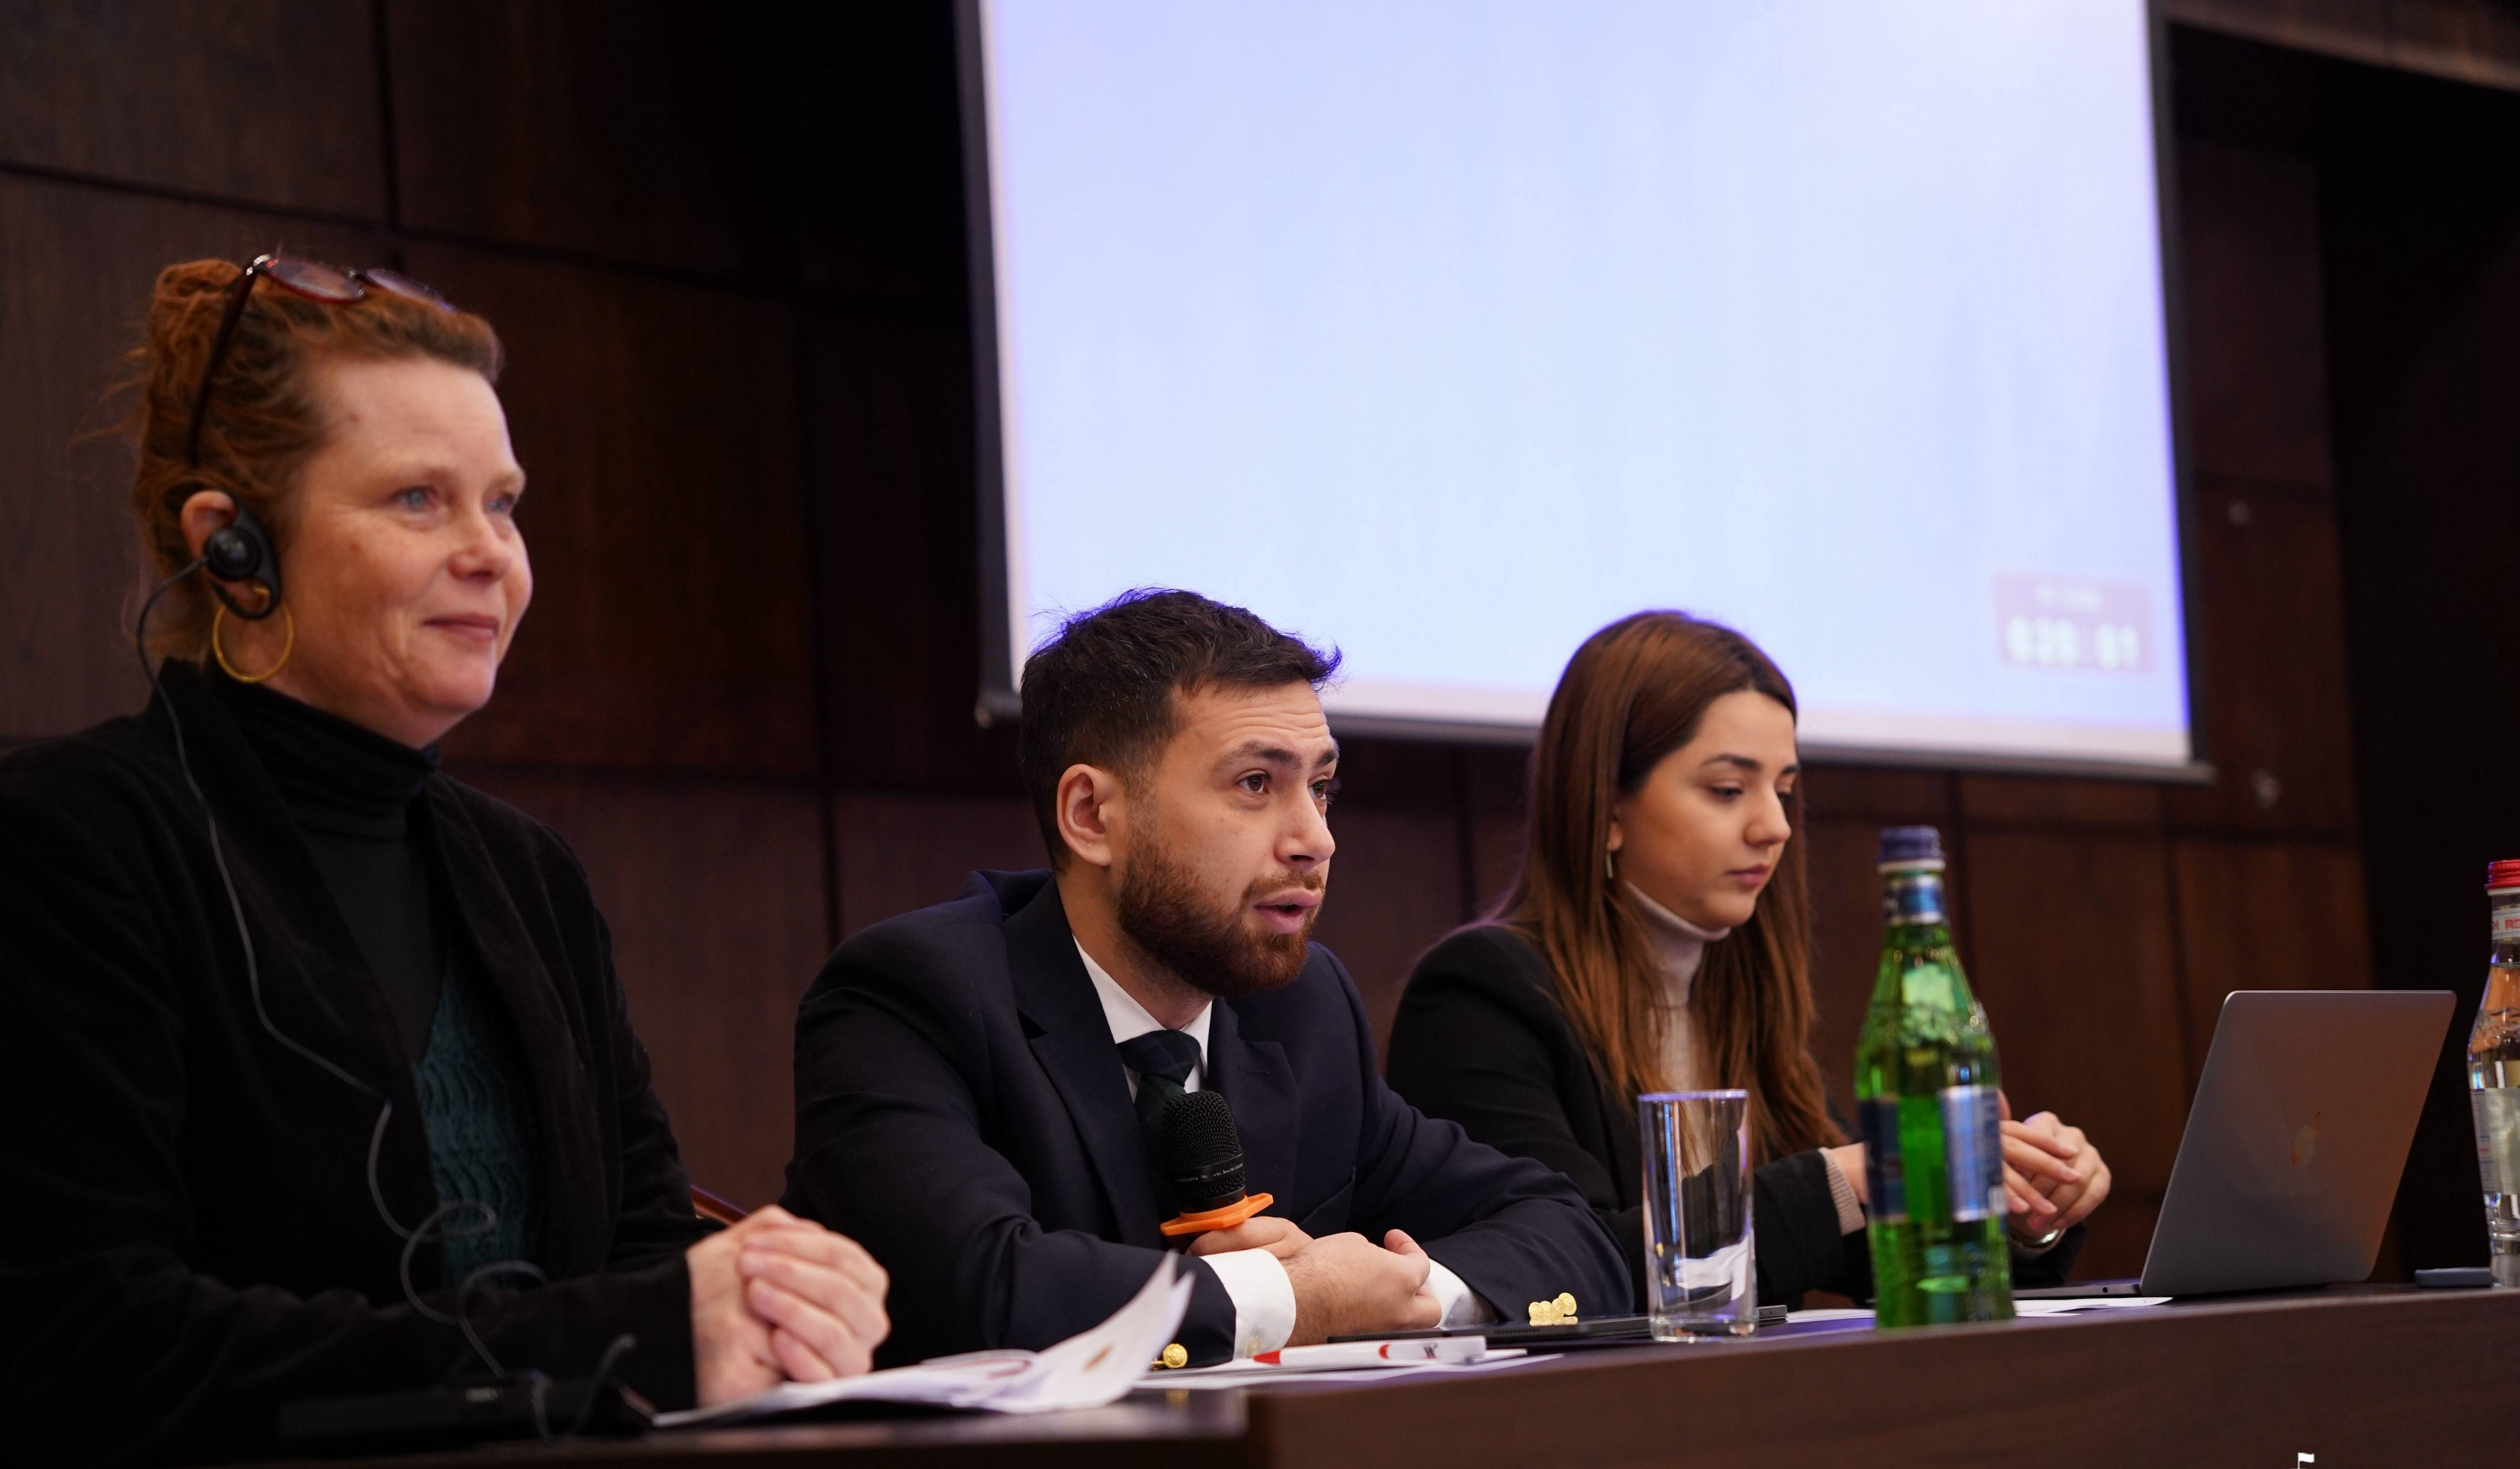 Տեղի է ունեցել Հայաստանի կողմից ներկայացվելիք Կամավոր ազգային զեկույցի մշակման գործընթացների վերաբերյալ առաջին աշխատաժողովը